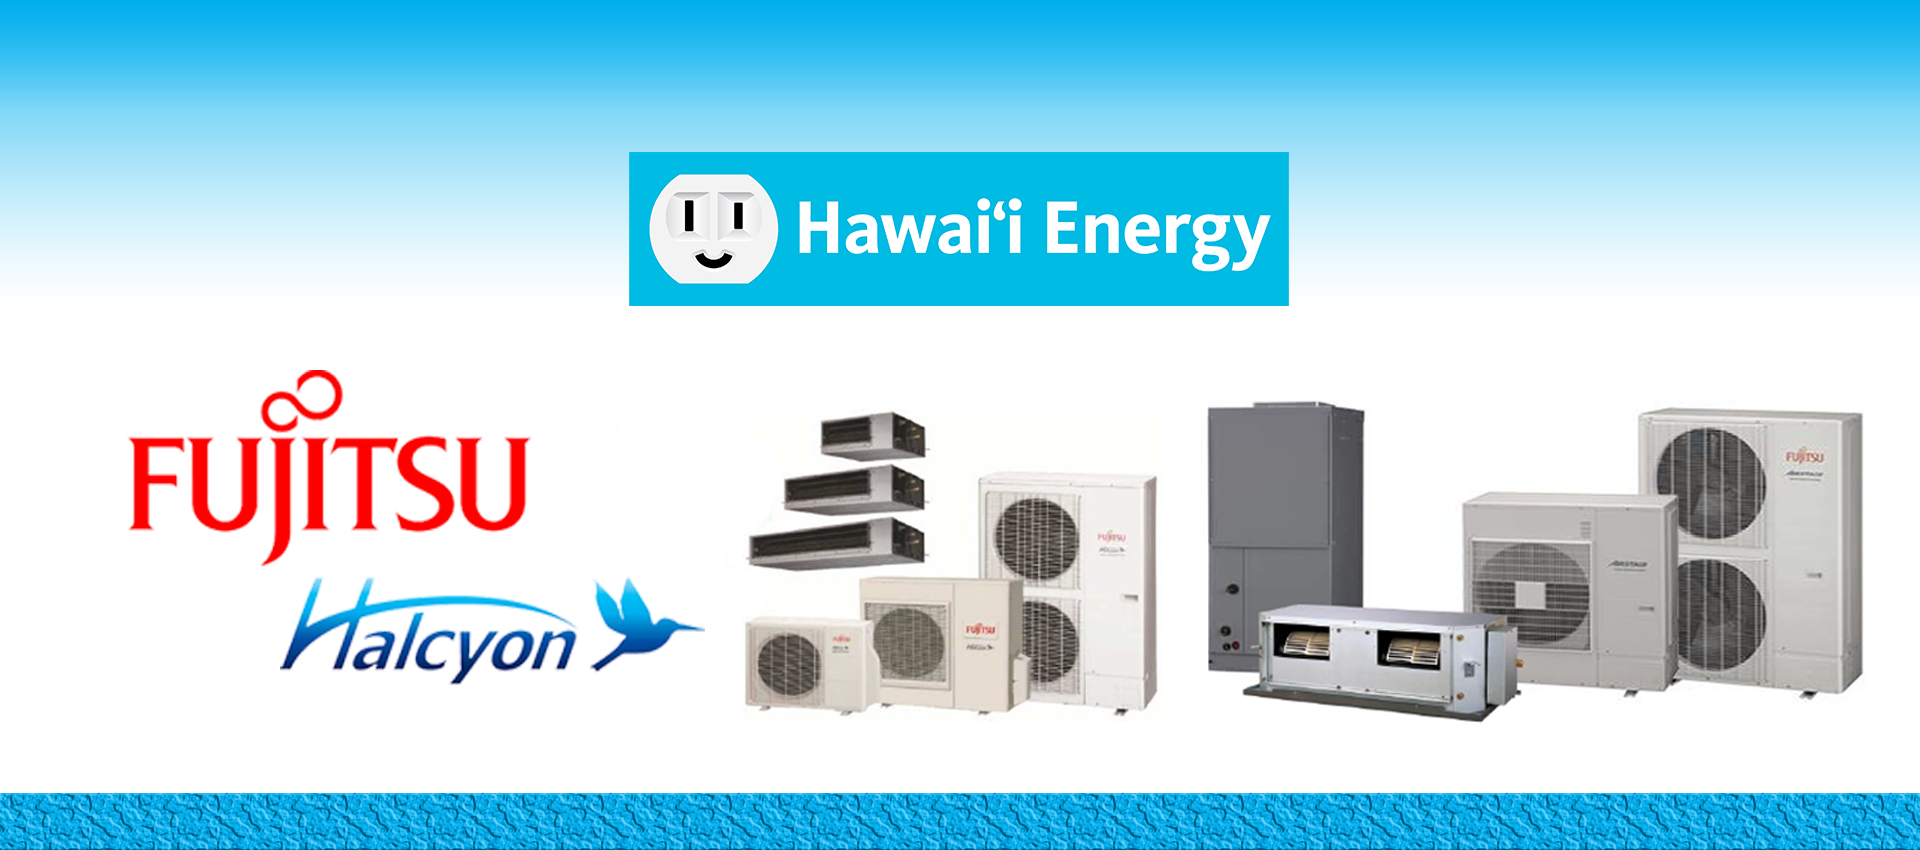 hawaii-energy-be-energy-smart